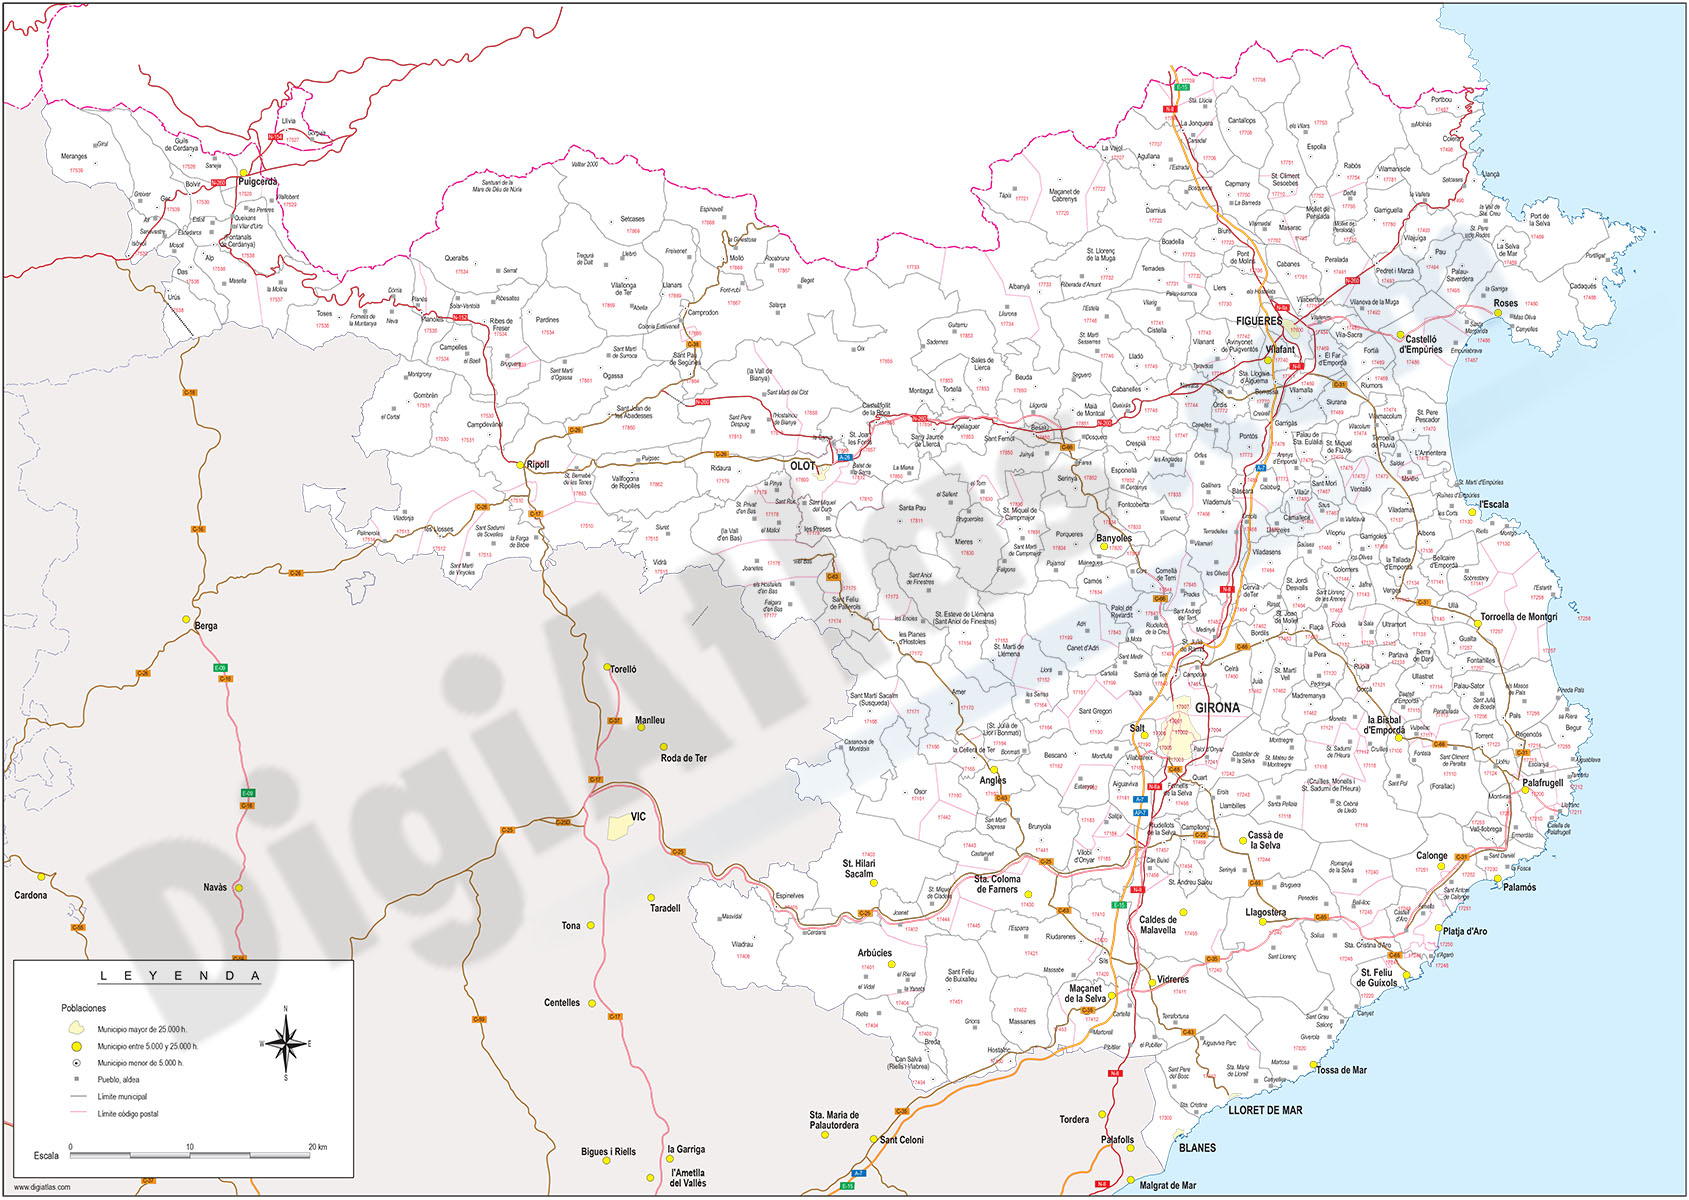 Girona - mapa provincial con municipios, códigos postales y carreteras